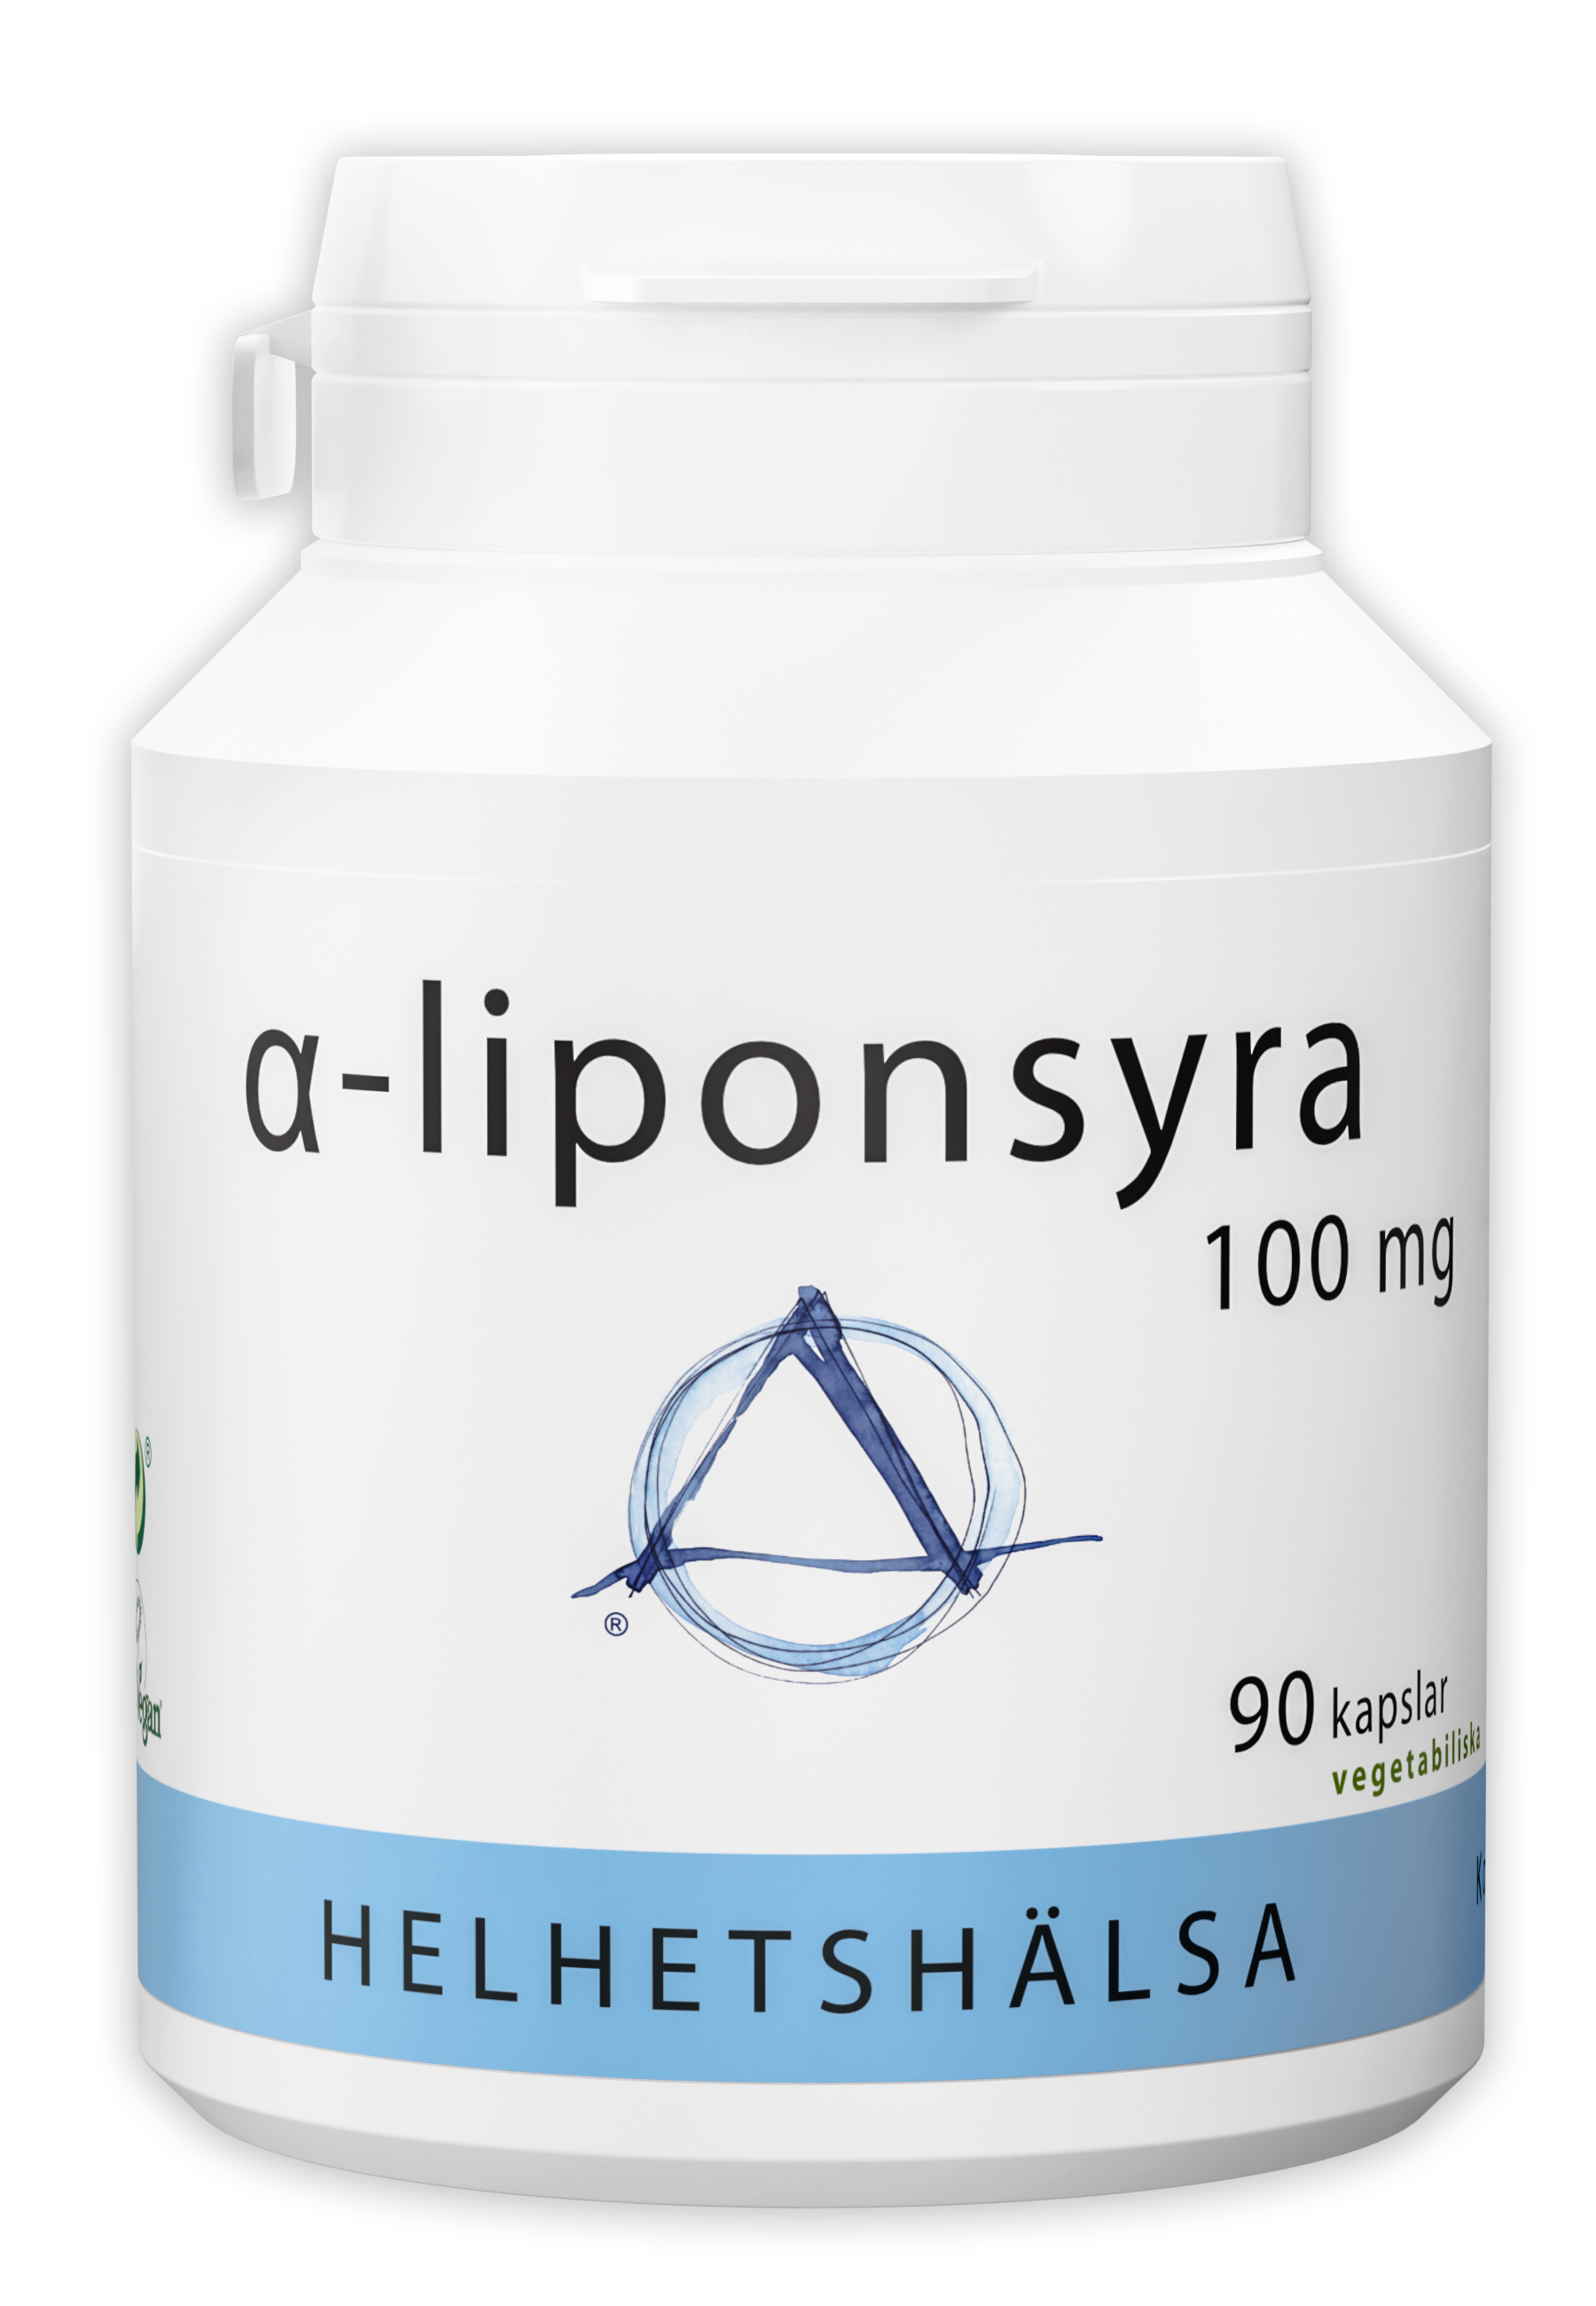 Alfa-liponsyra 100 kapslar från Helhetshälsa